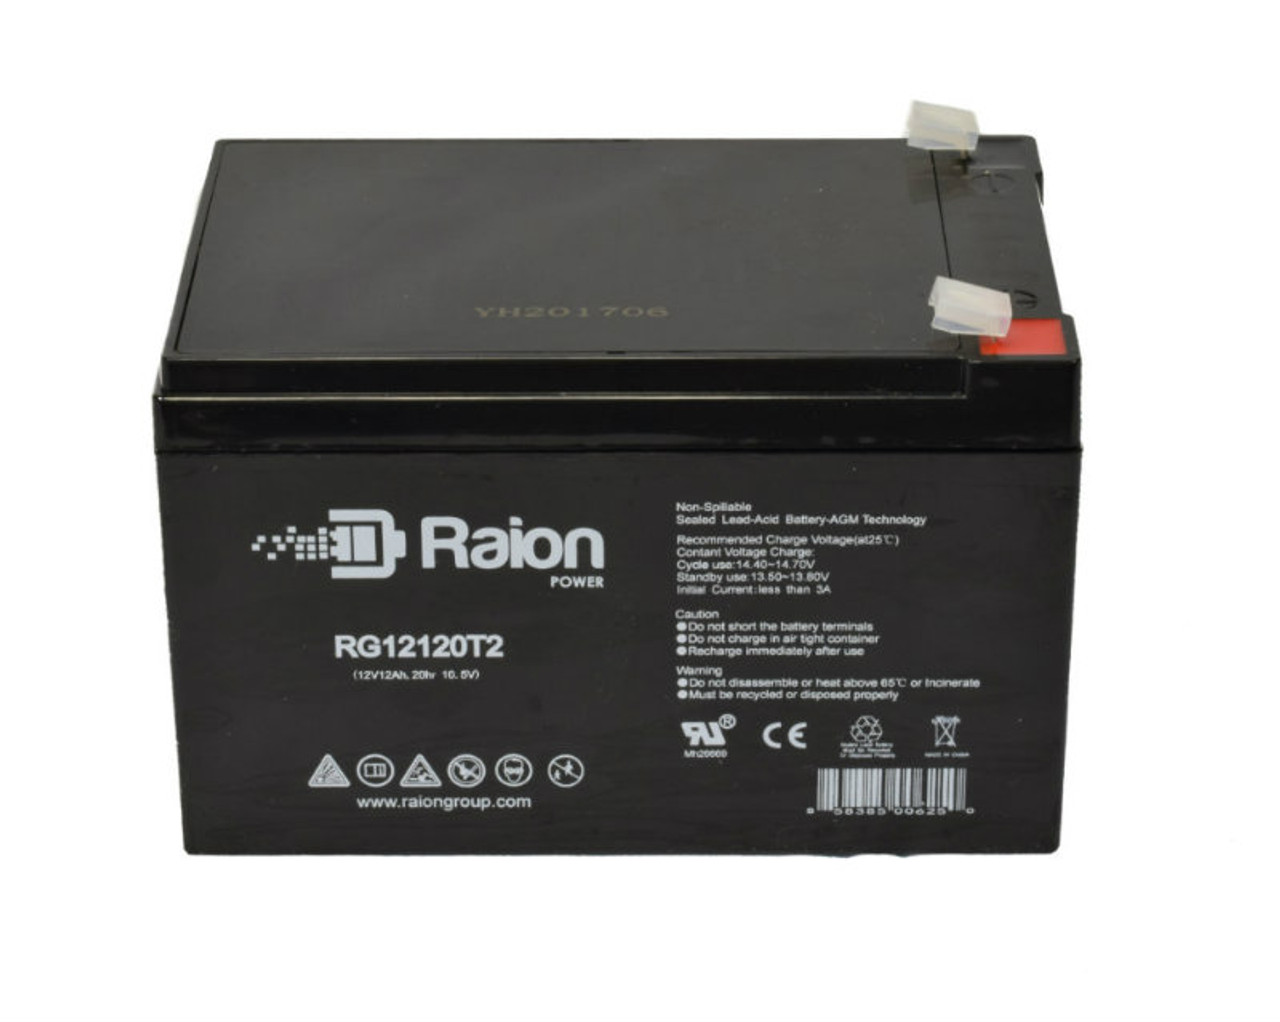 Raion Power RG12120T2 SLA Battery for Best Battery SLA12120